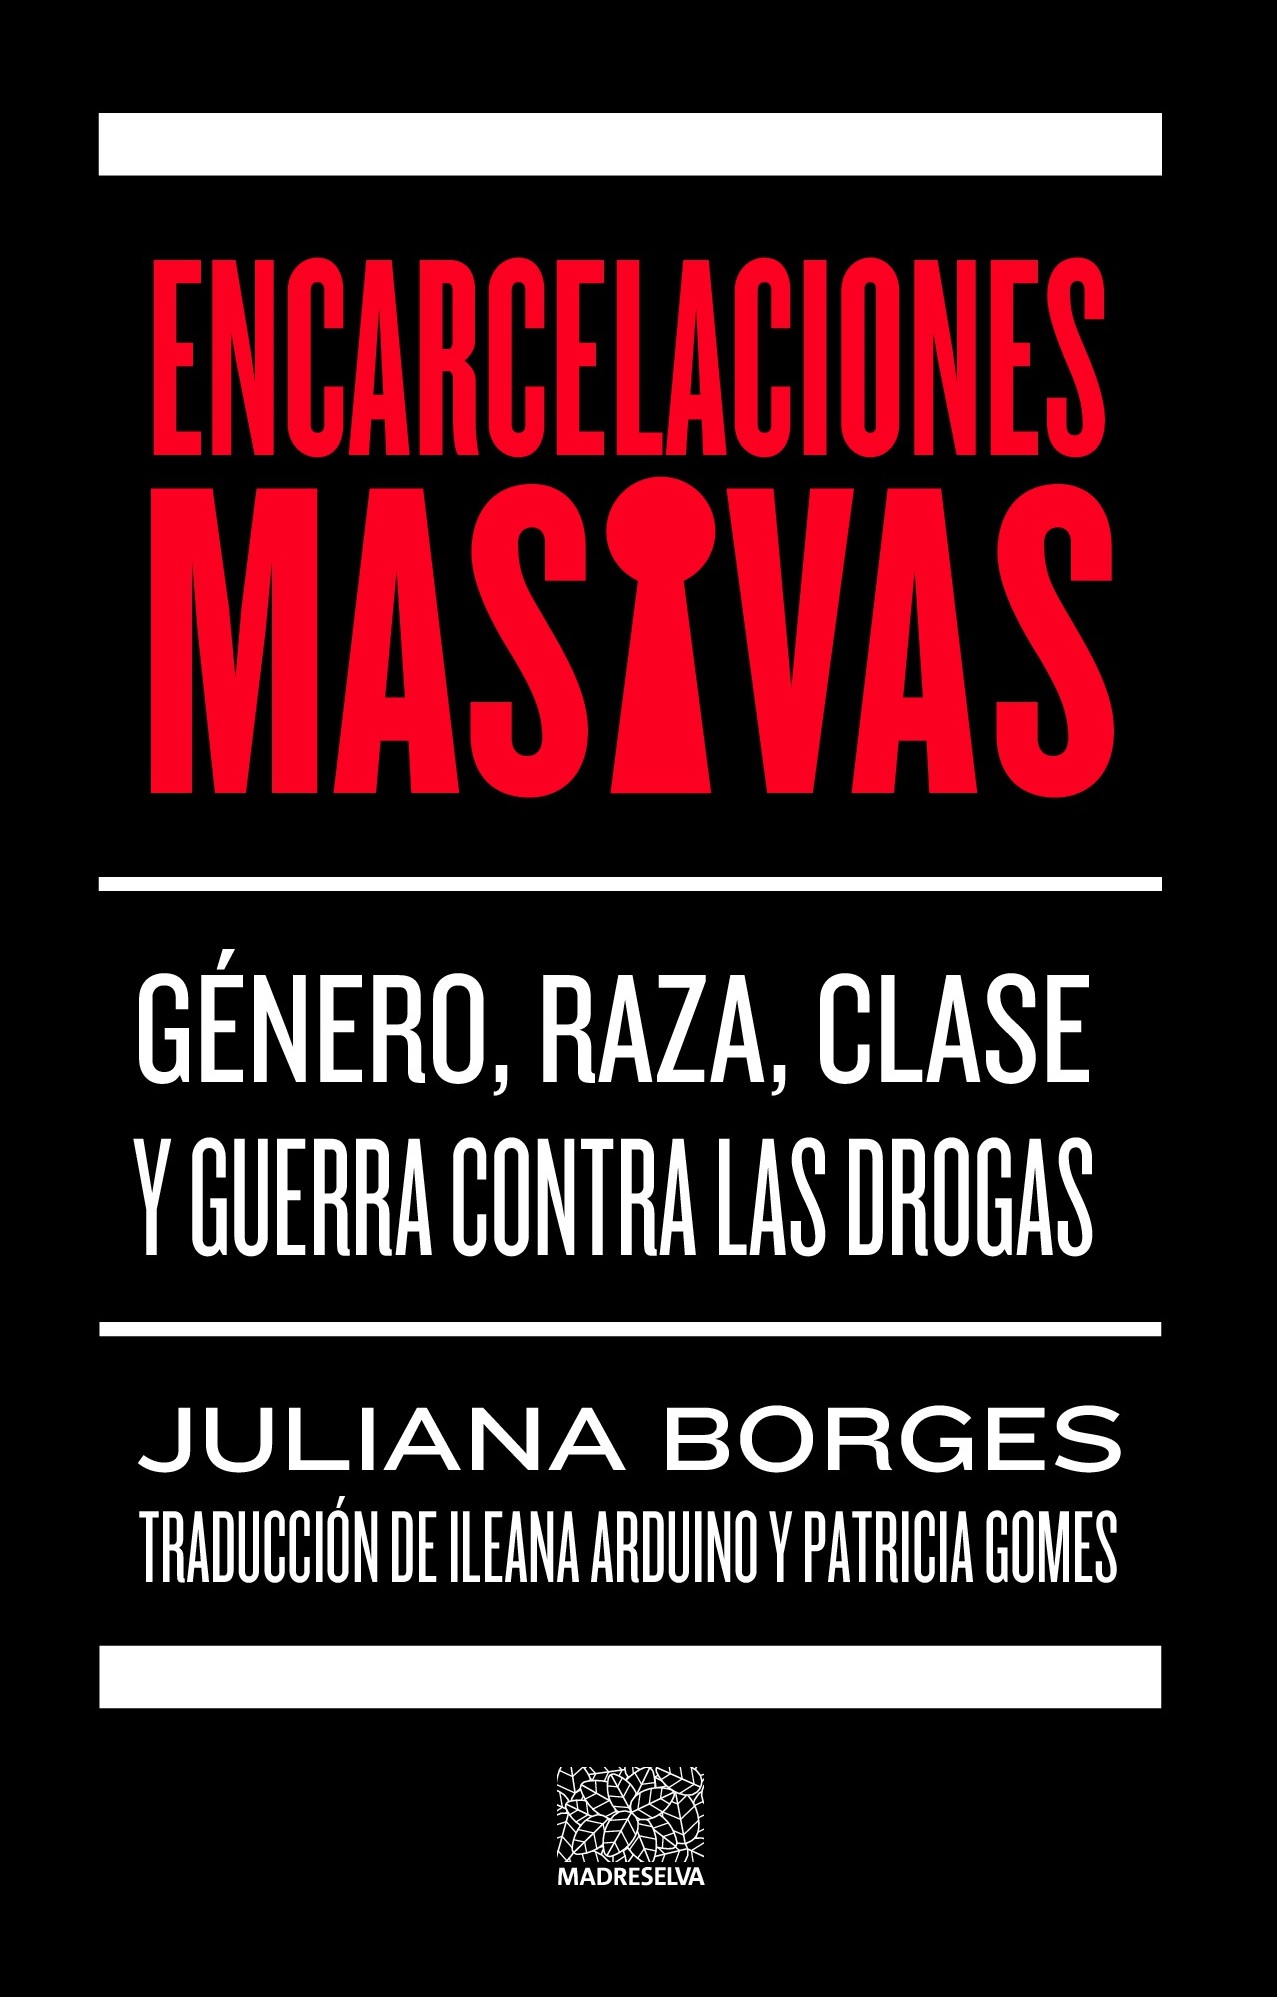 ENCARCELACIONES MASIVAS - Juliana Borges